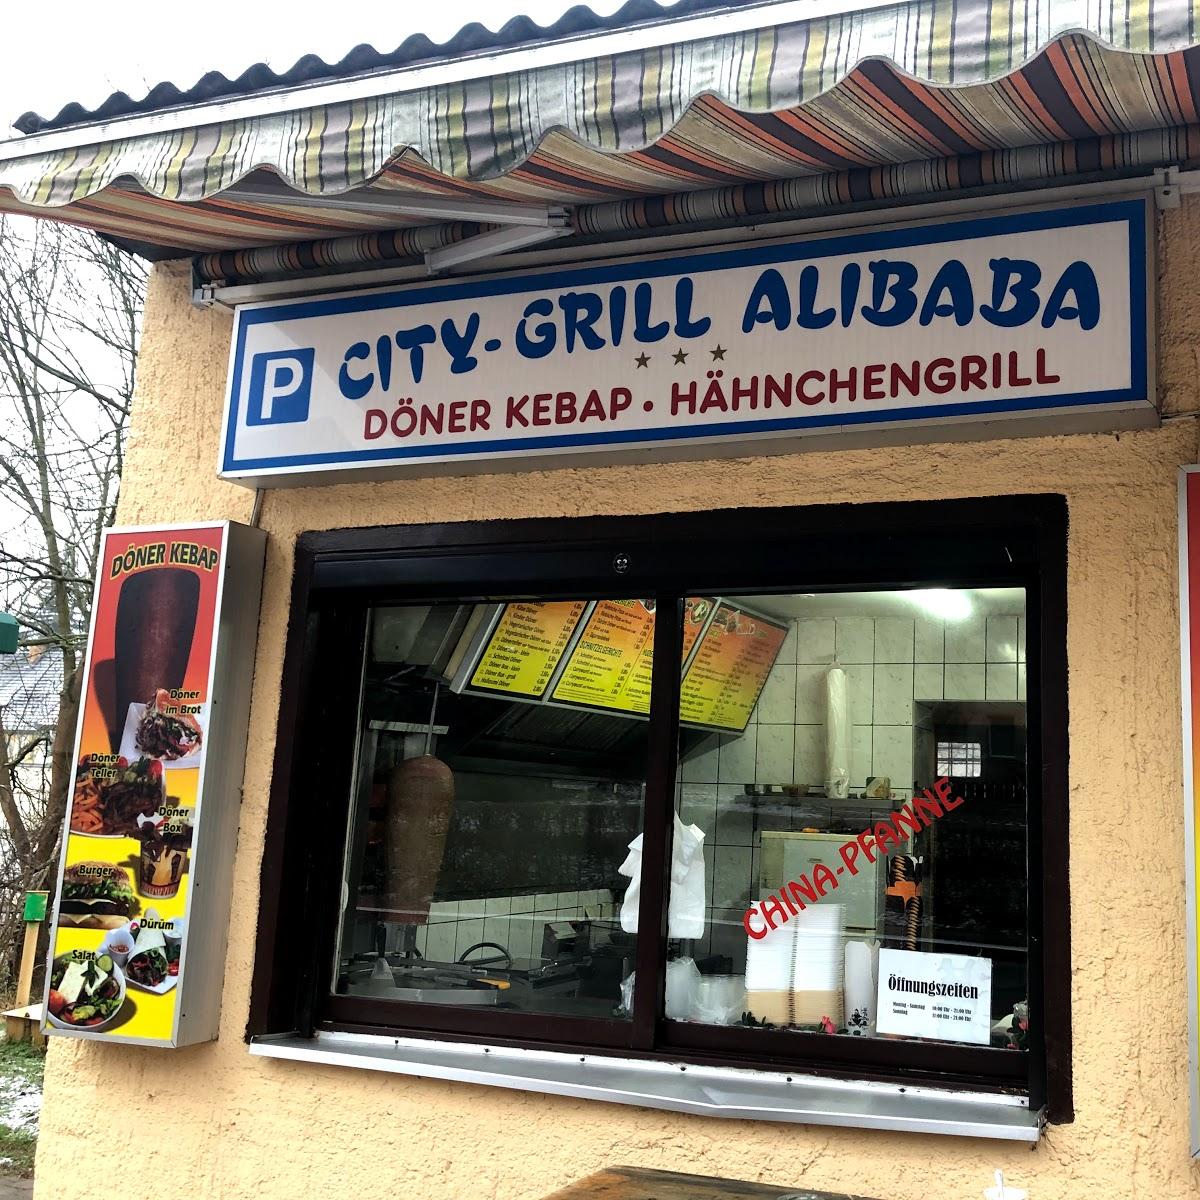 Restaurant "City-Grill Alibaba Döner &Hähnchengrill" in Oderberg